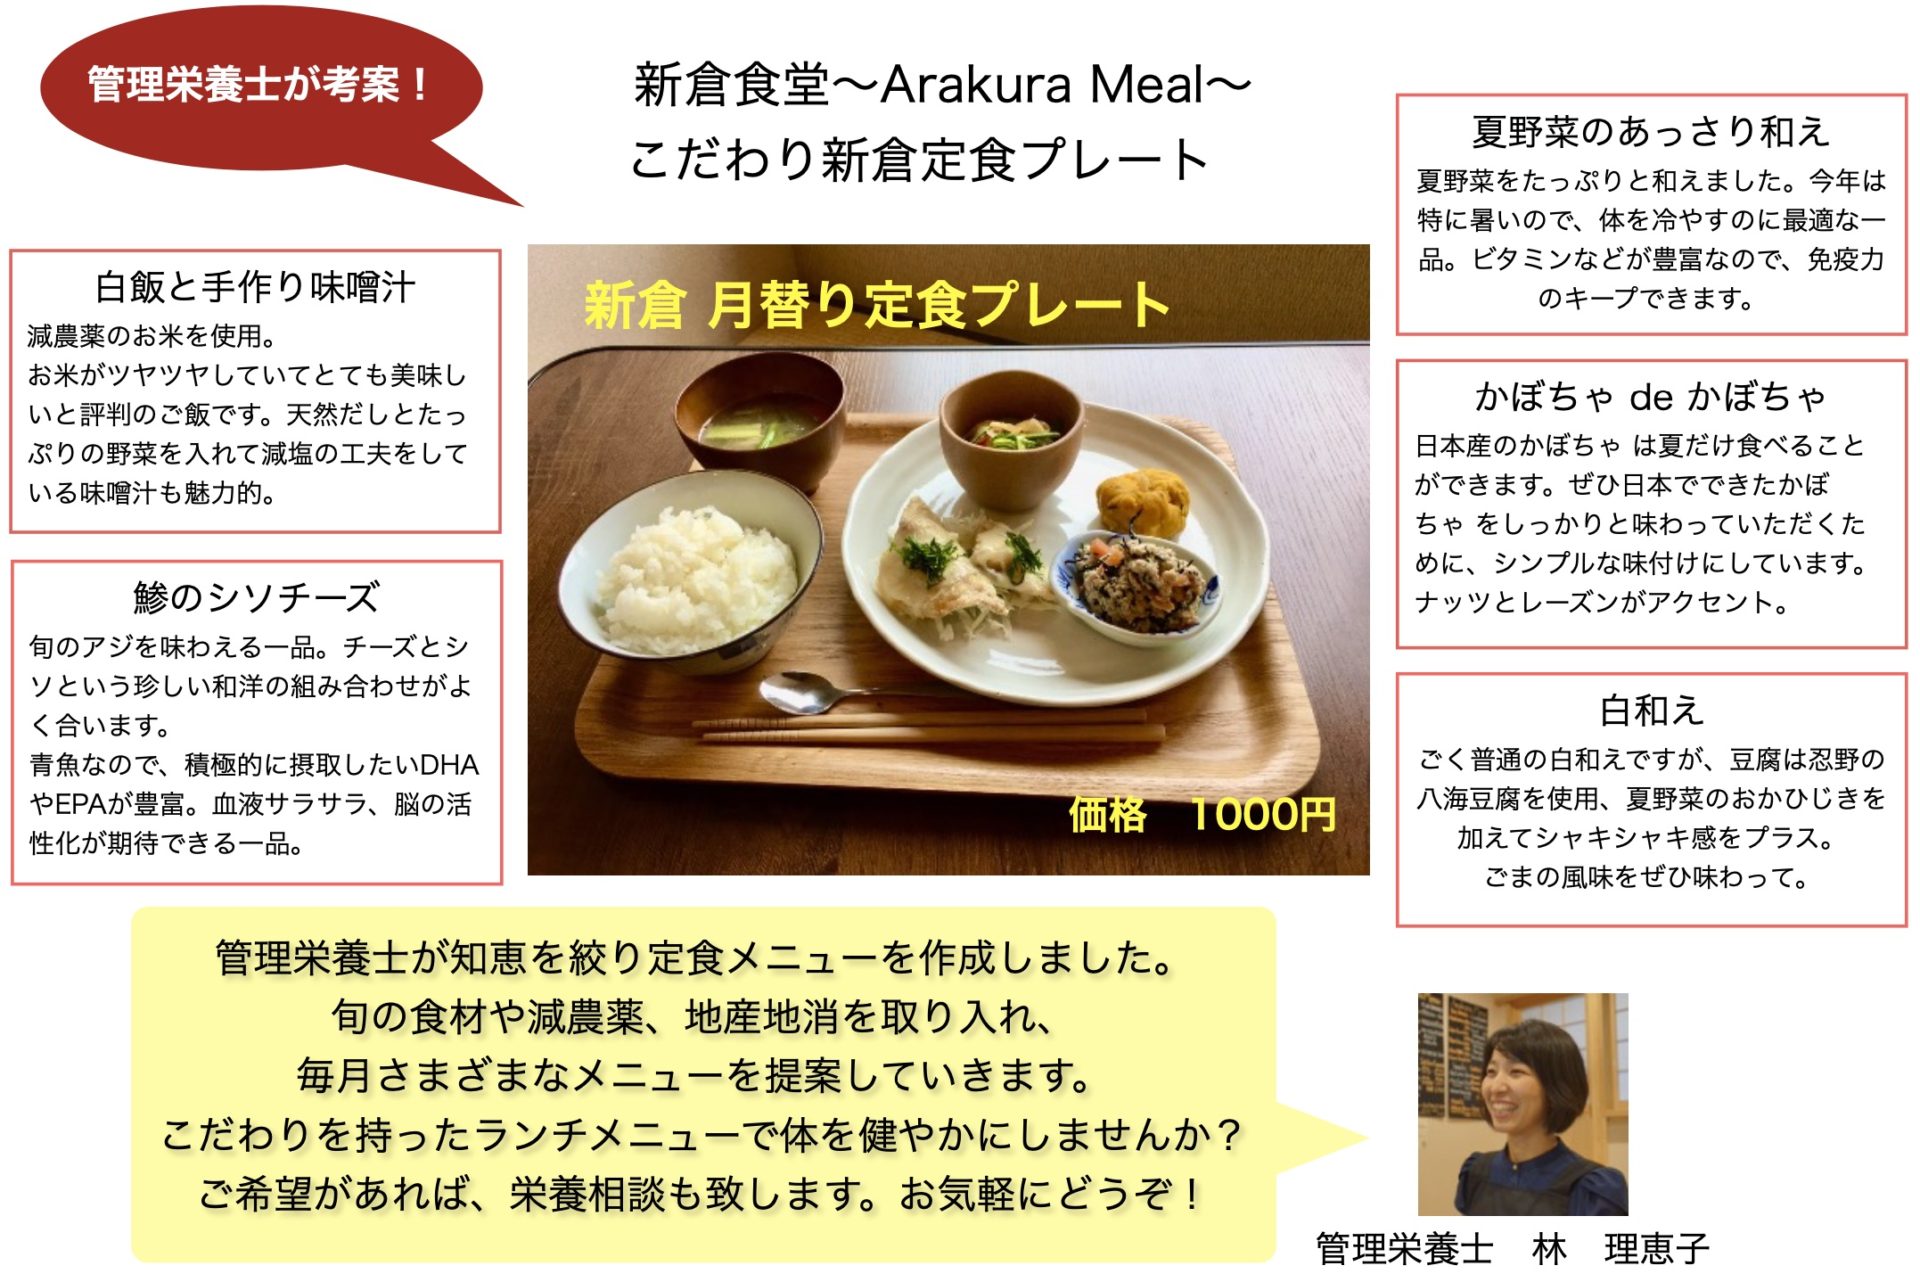 ７月の あらくら定食プレート のメインはアジです ゲストハウス Arakura と あらくら食堂